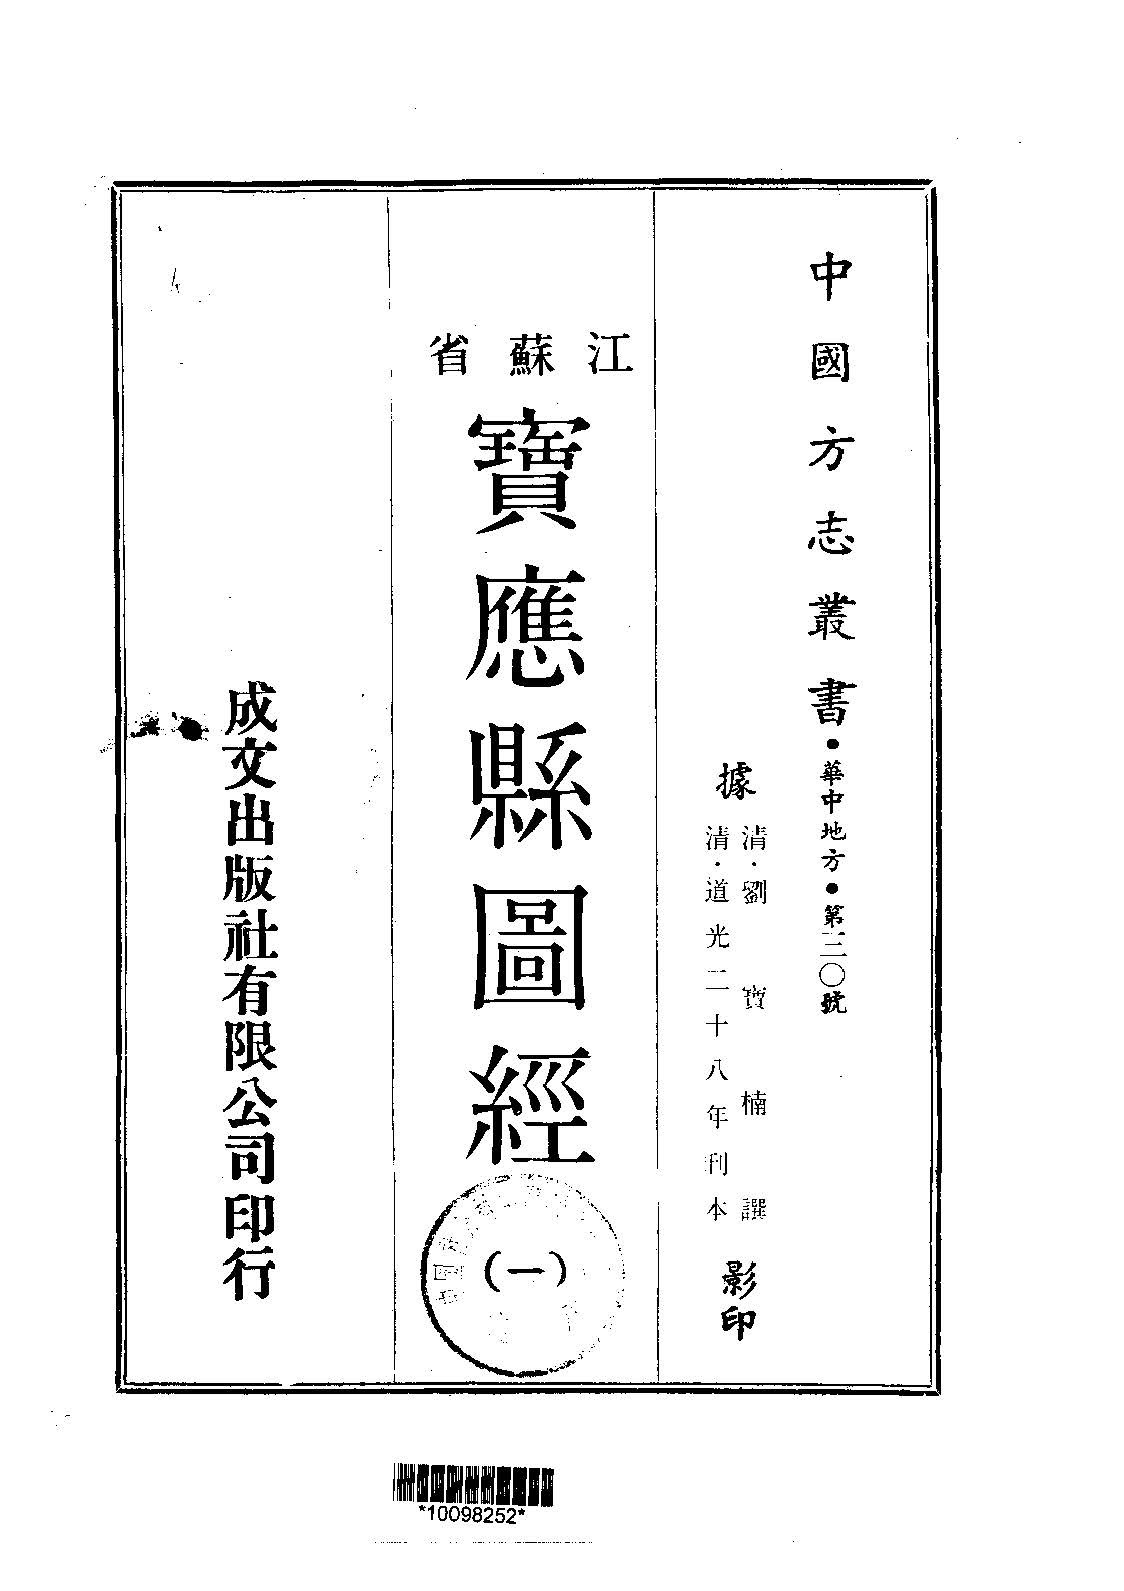 宝应县图经的书籍封面